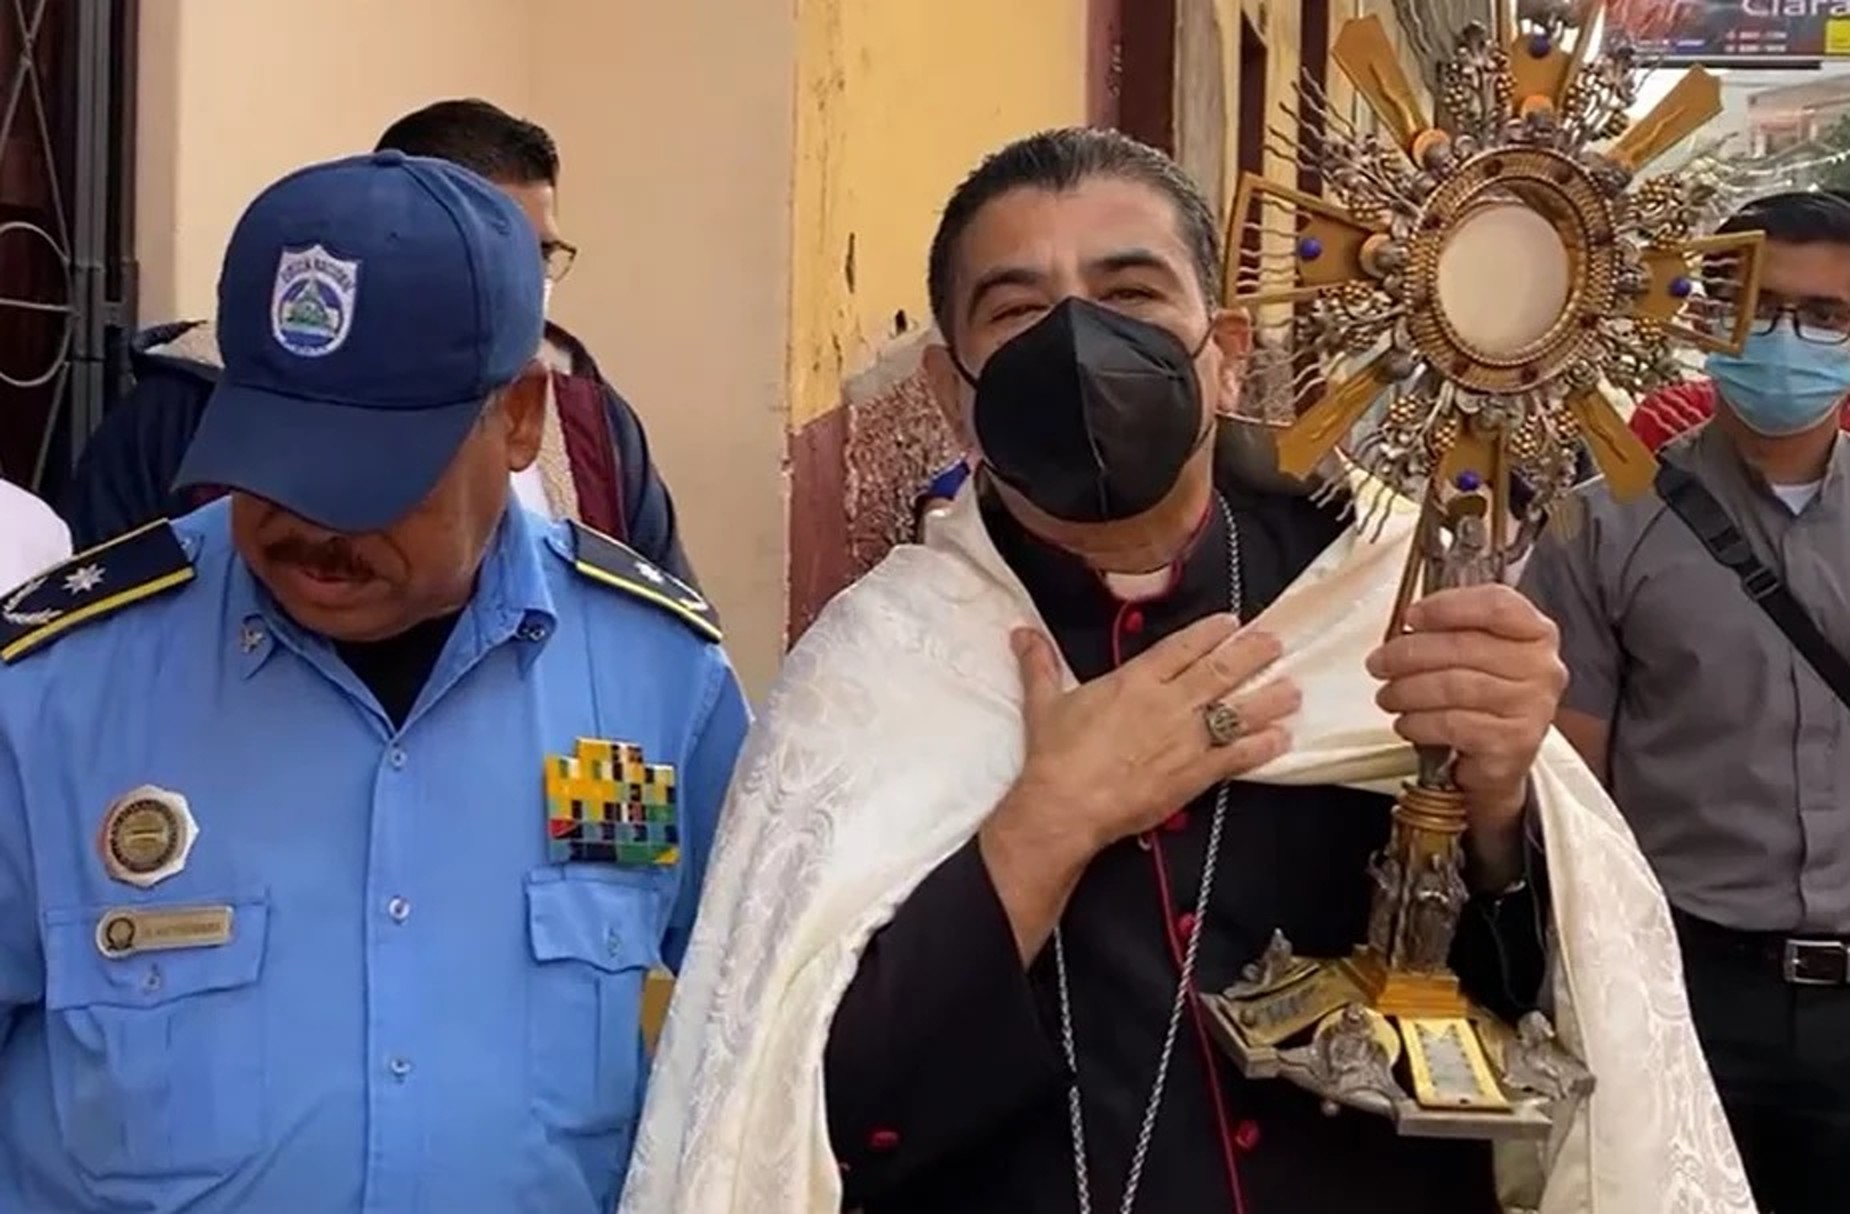 U Nikaragvi u tjedan dana uhićeno 6 katoličkih svećenika